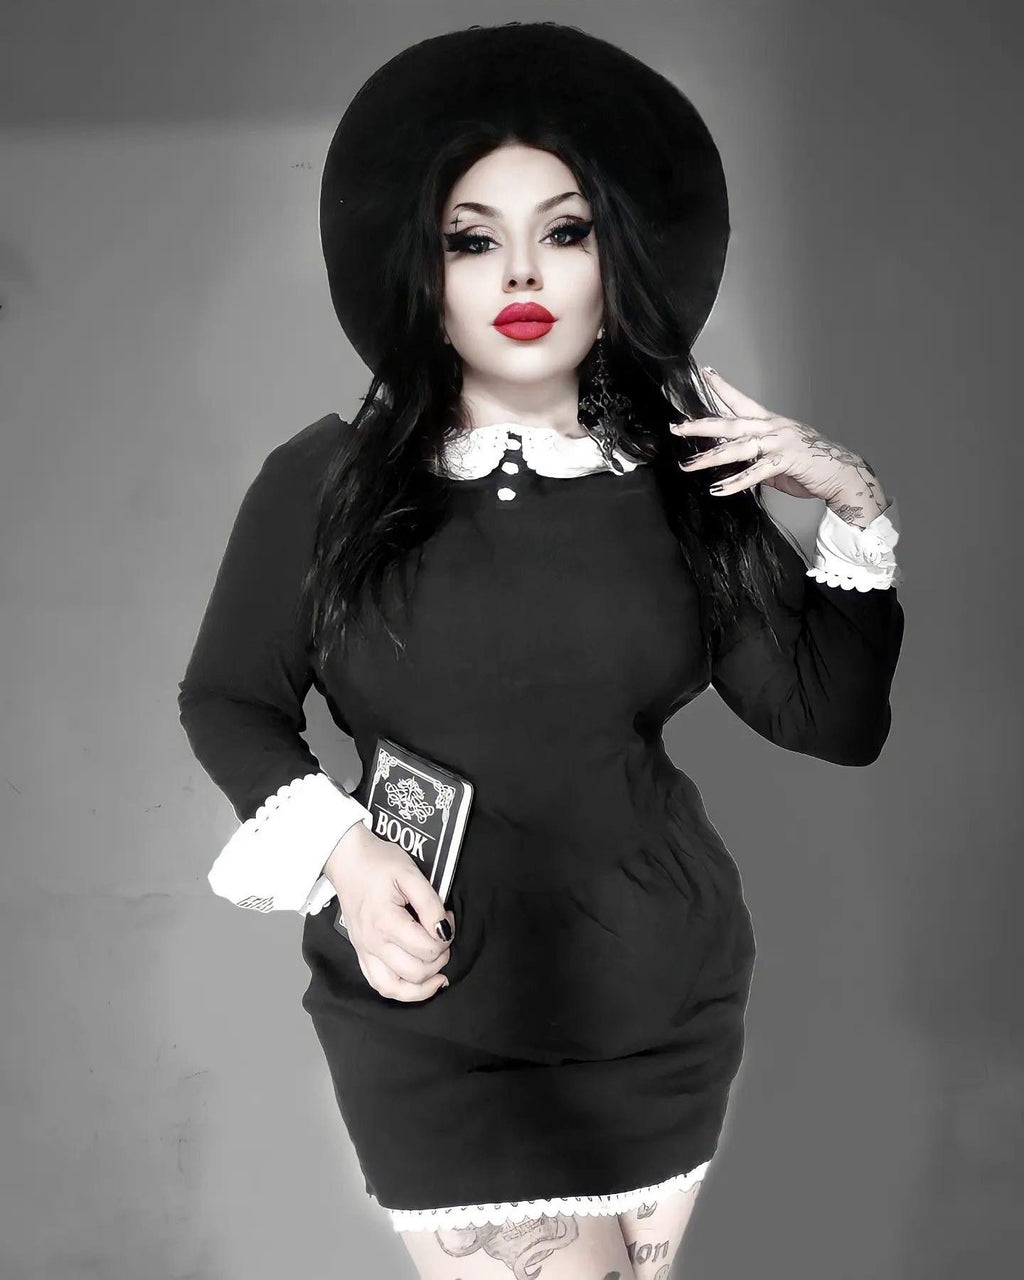 shop adorable ladies gothic fashion online